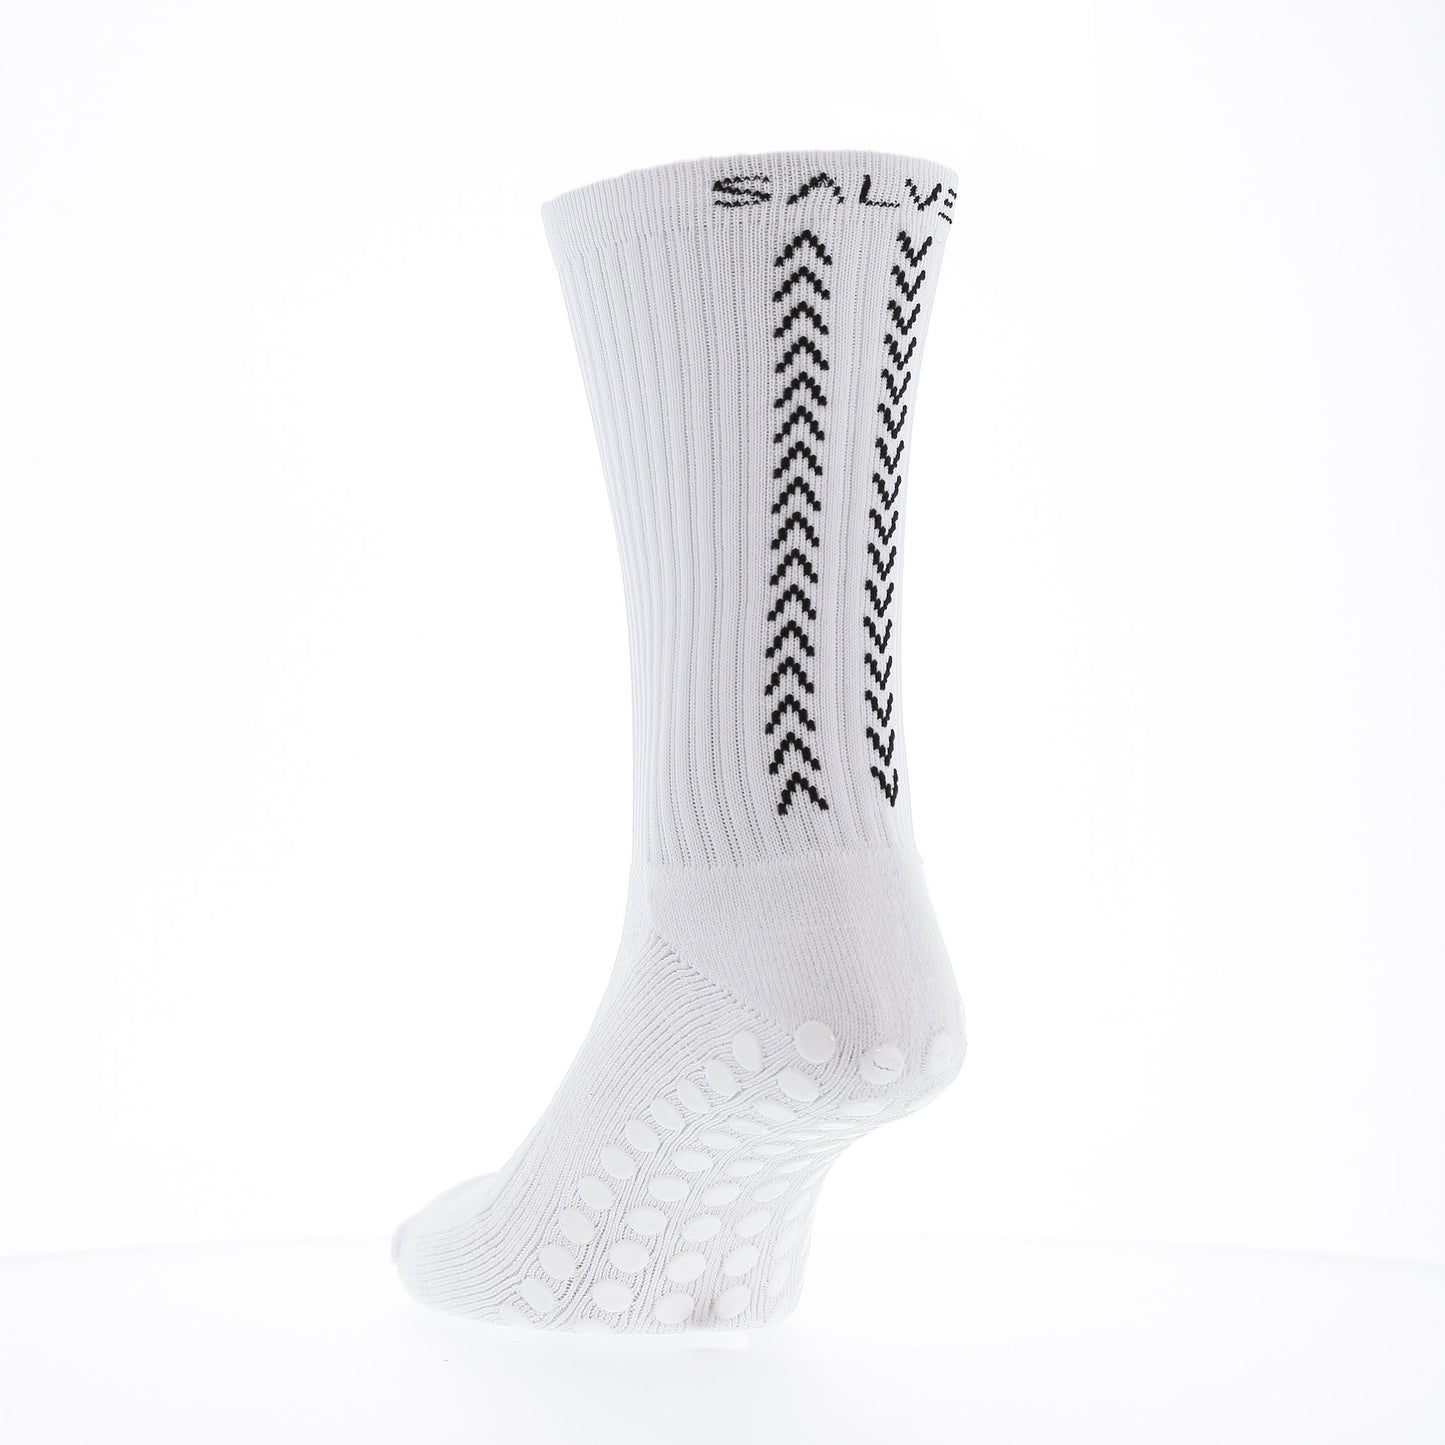 Salve Grip-socks 1.0 3-pack, white